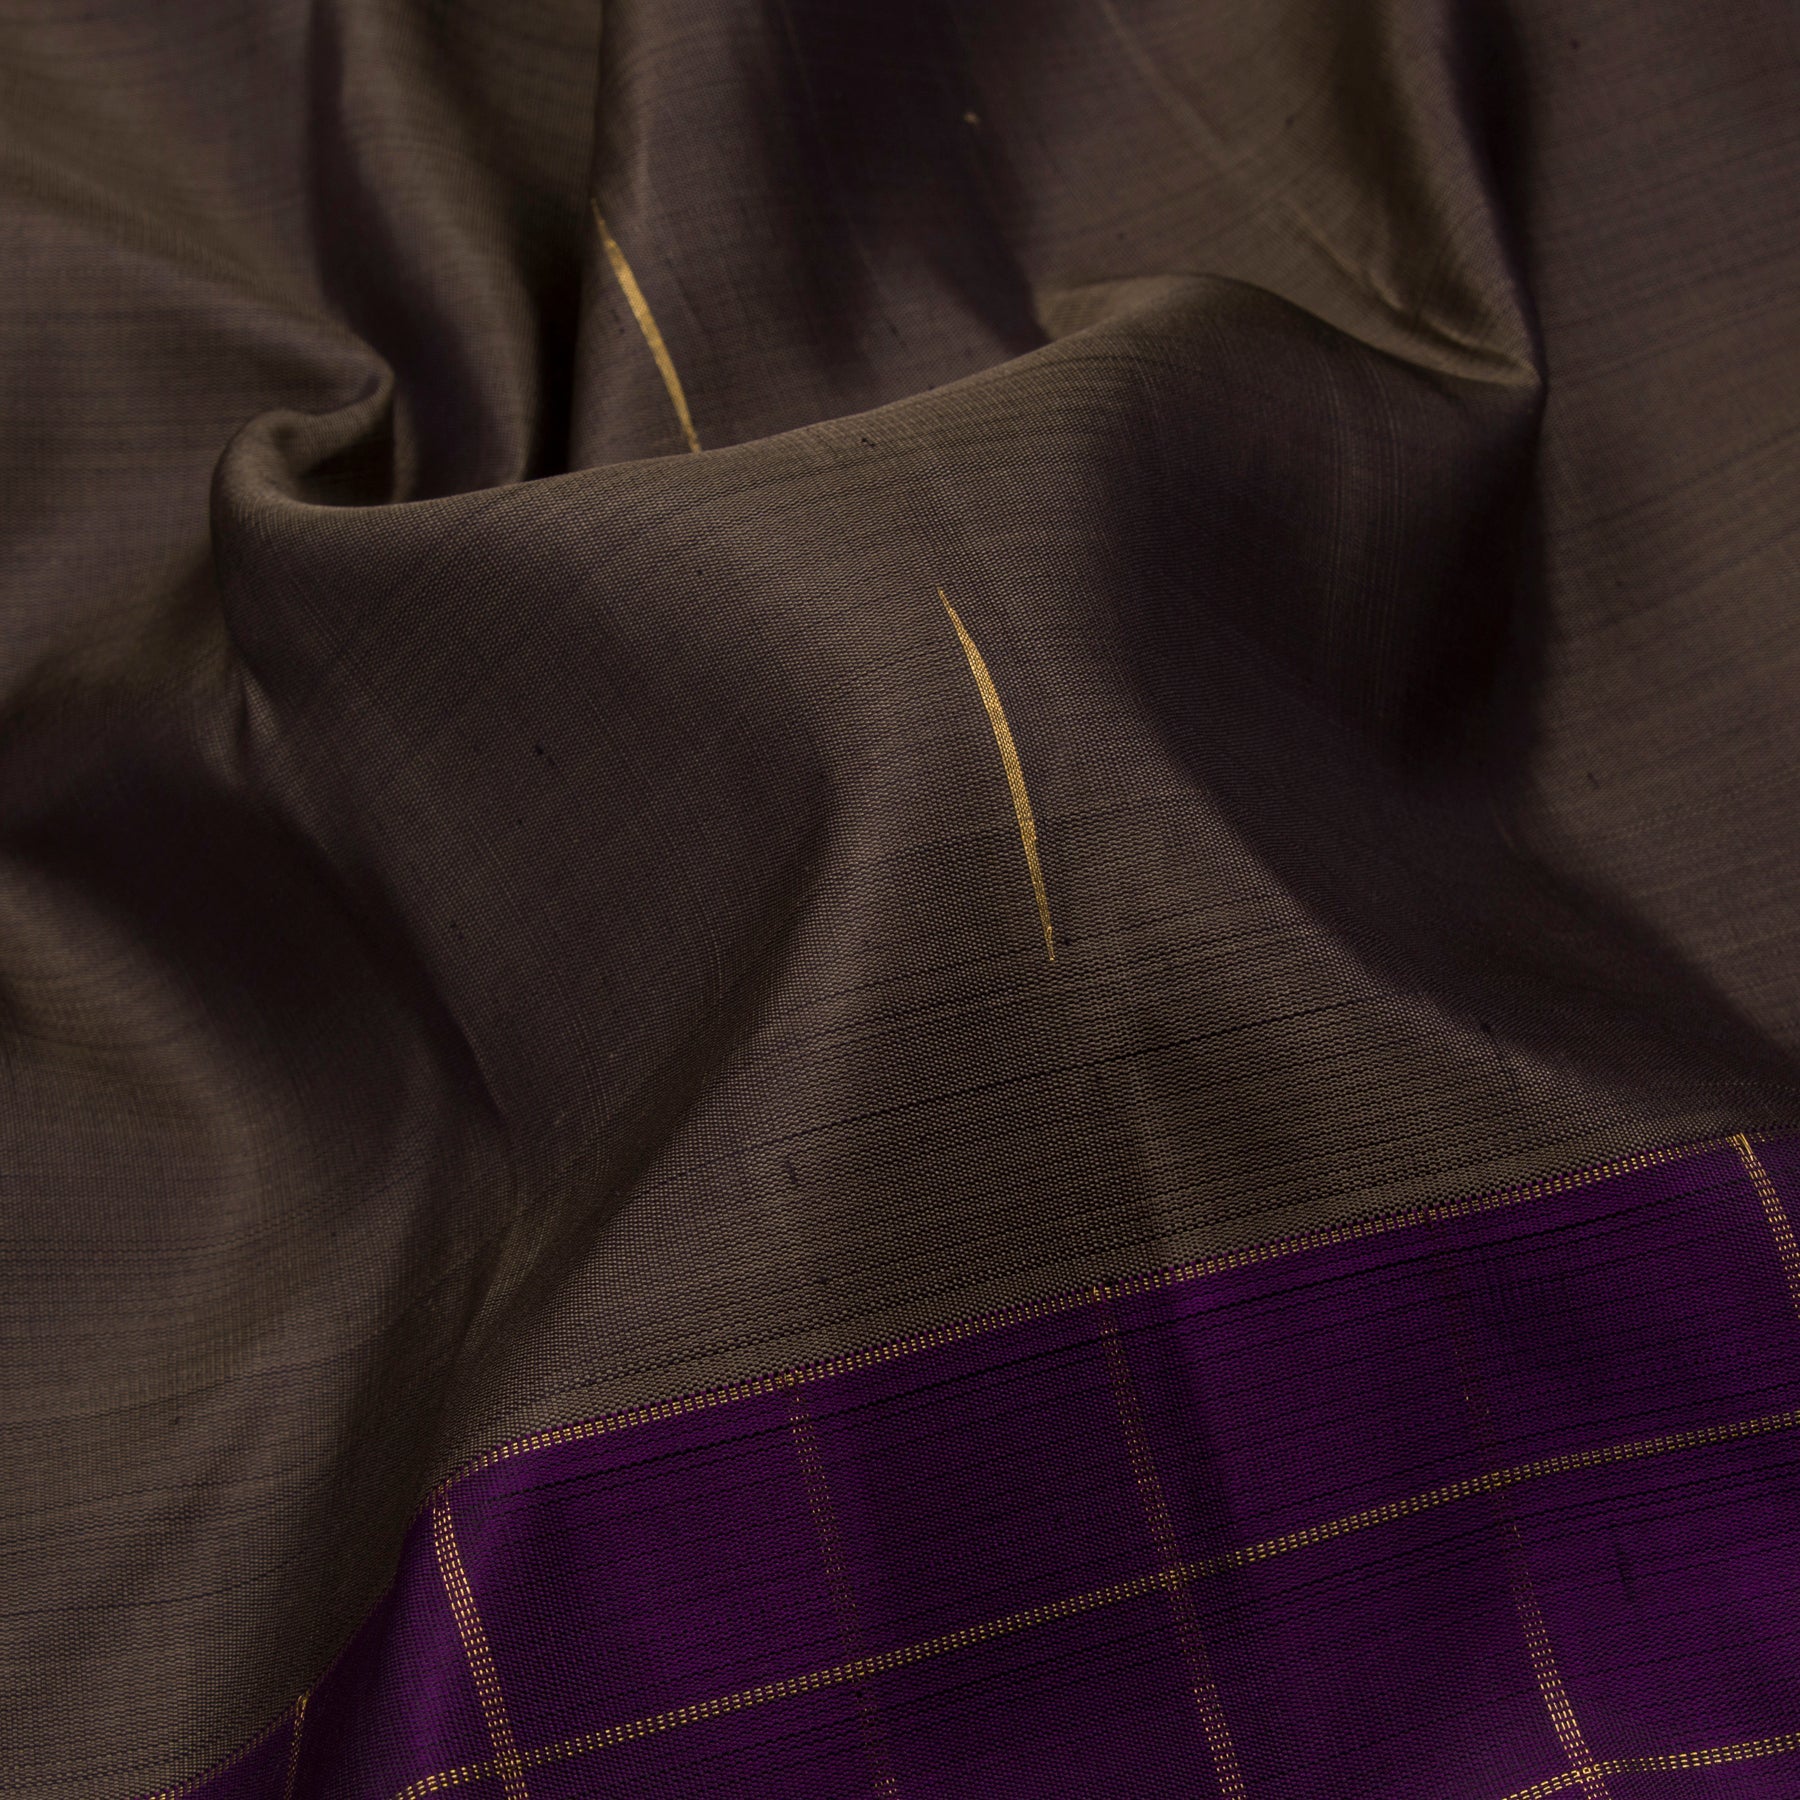 Kanakavalli Kanjivaram Silk Sari 23-595-HS001-11385 - Fabric View